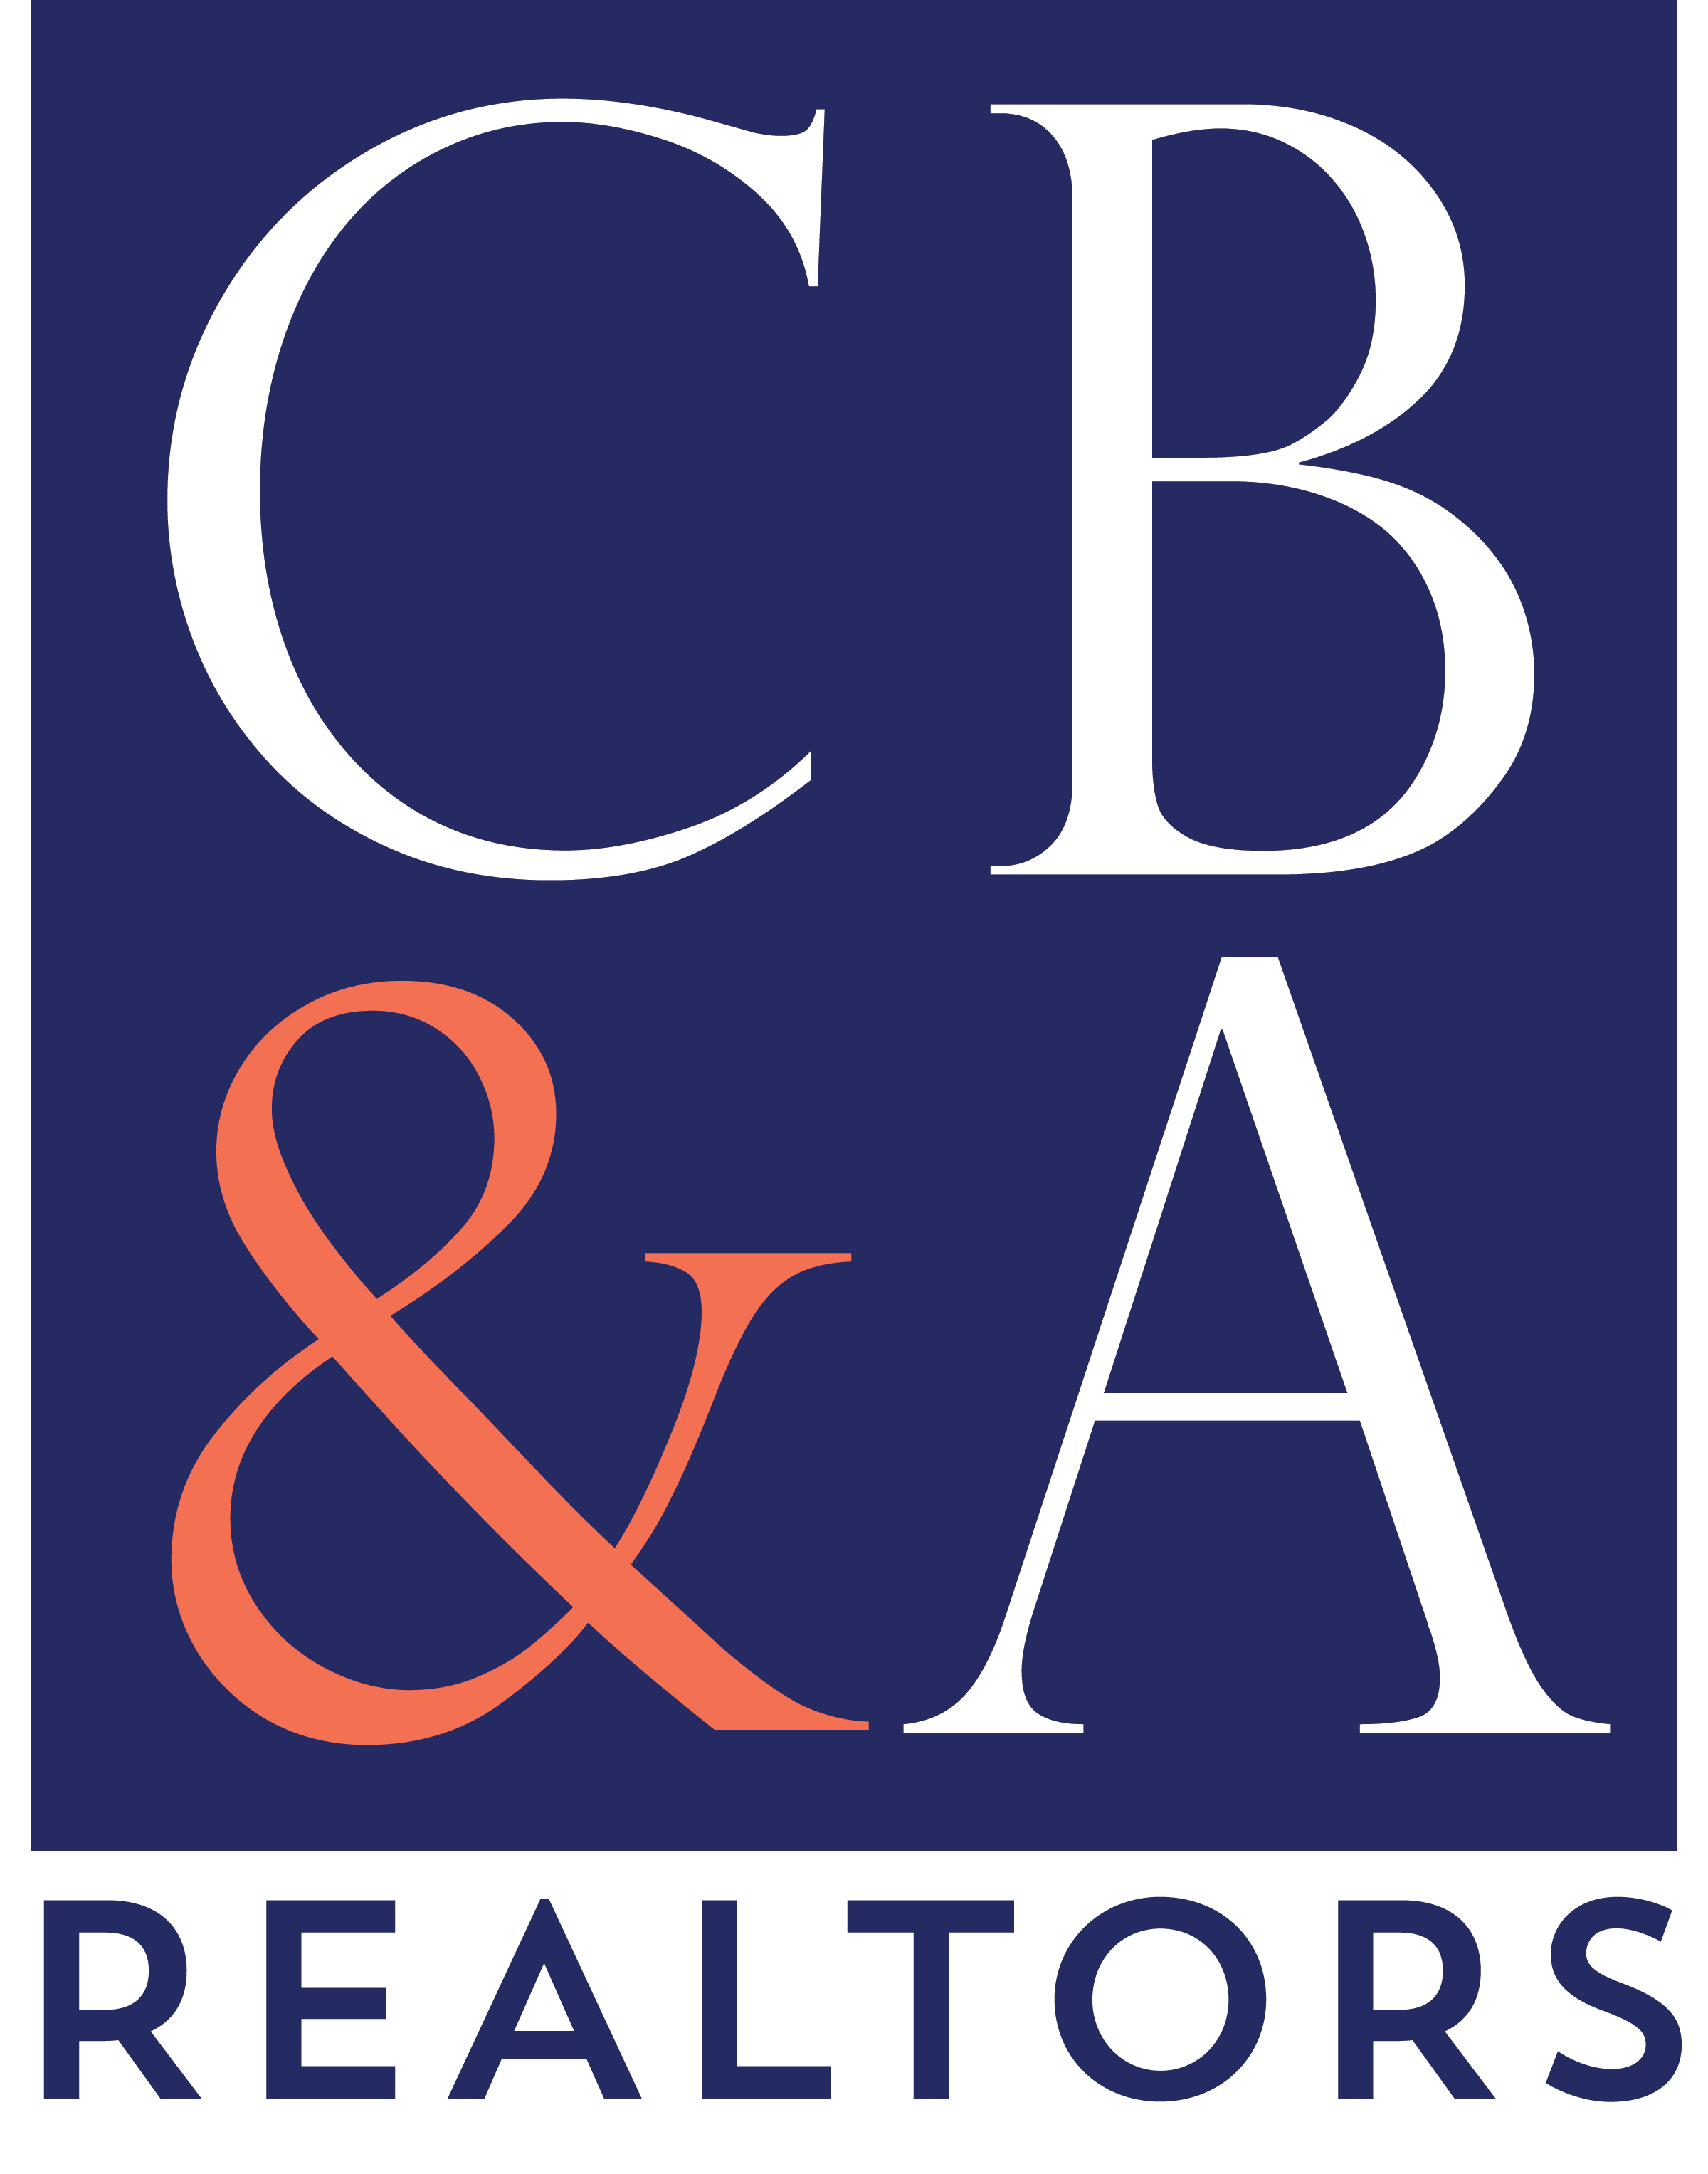 CB&A, Realtors logo